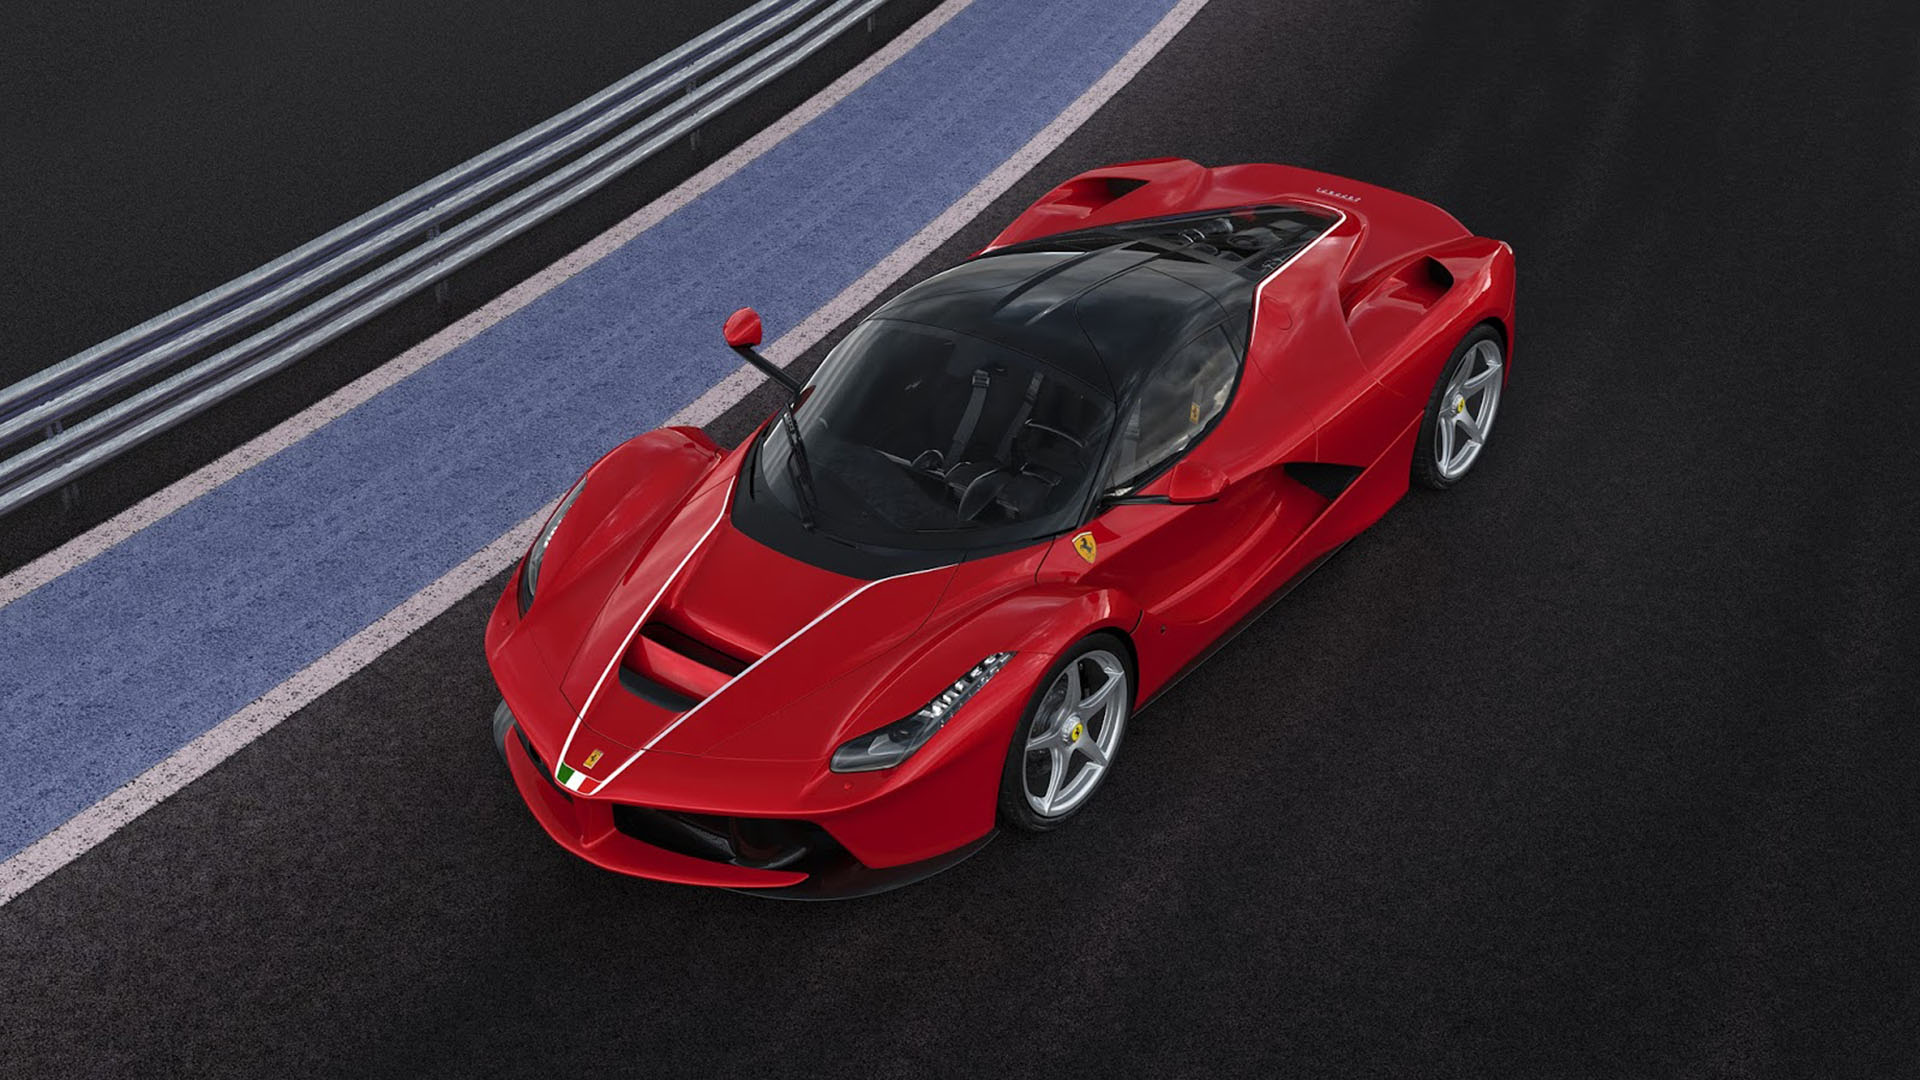 El futuro de Ferrari va hacia la electrificación. En 2025 llegará el primer auto completamente propulsado a batería y tendrá un sonido único y dinámico